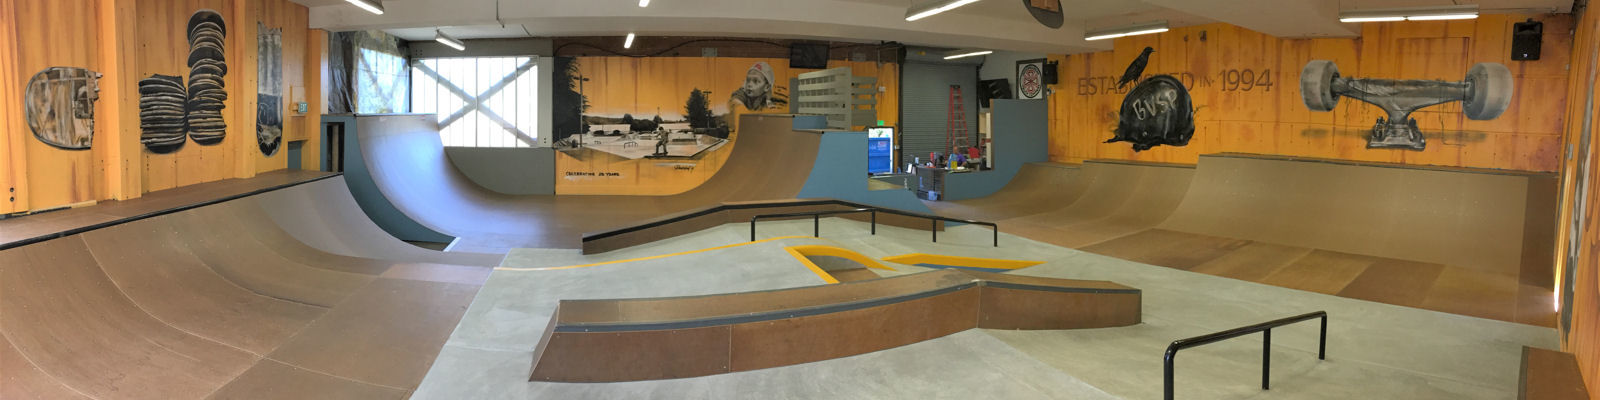 Indoor view of Bellevue Skate Park